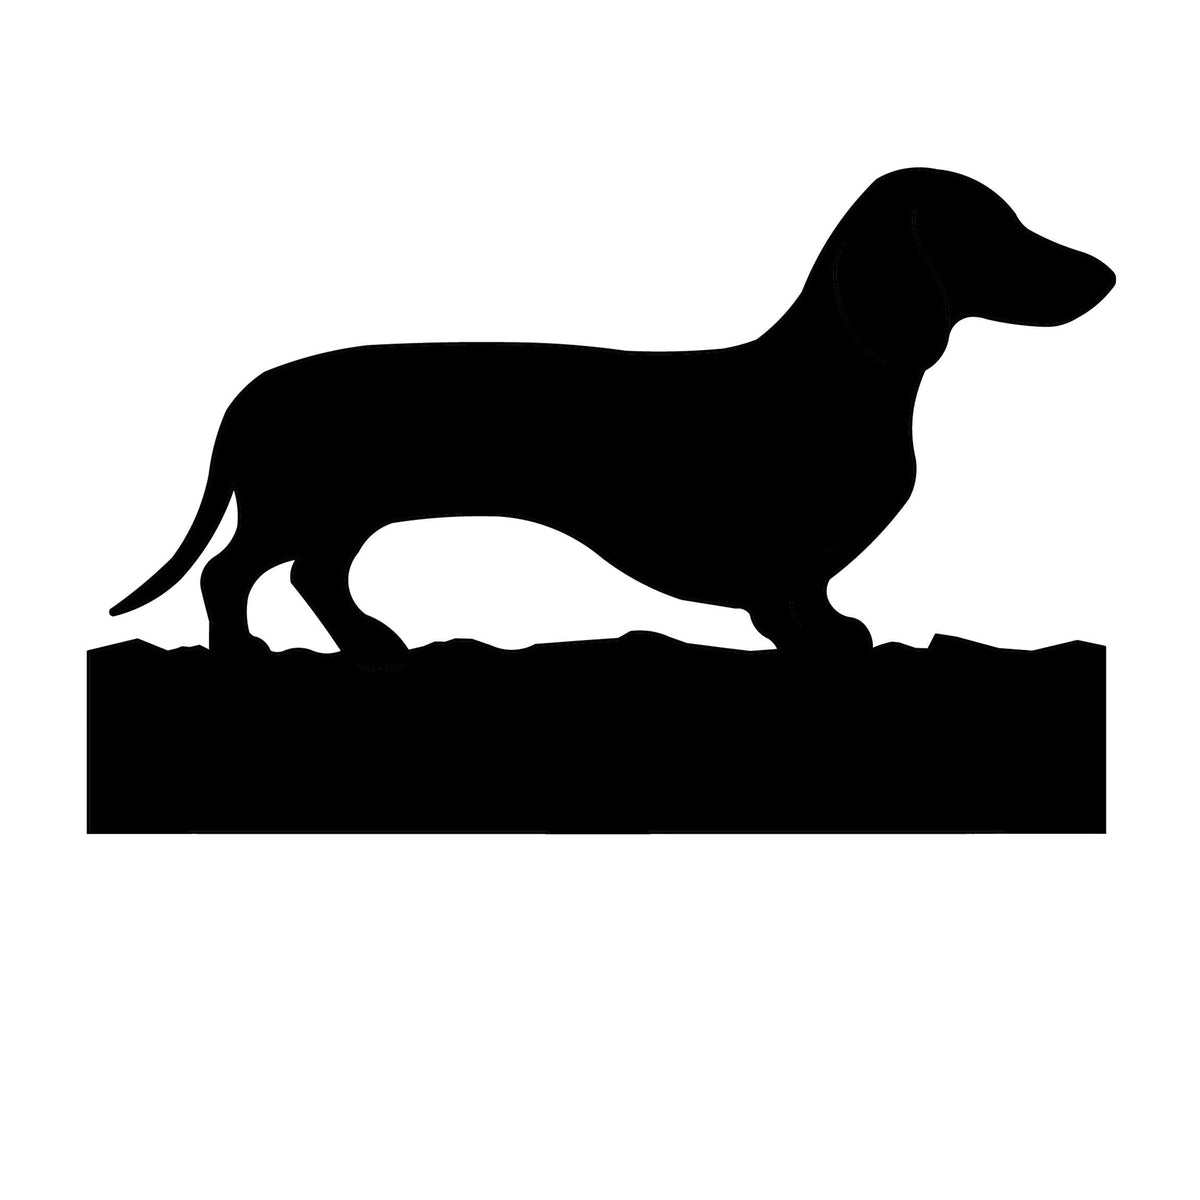 Dachshund dog address stake